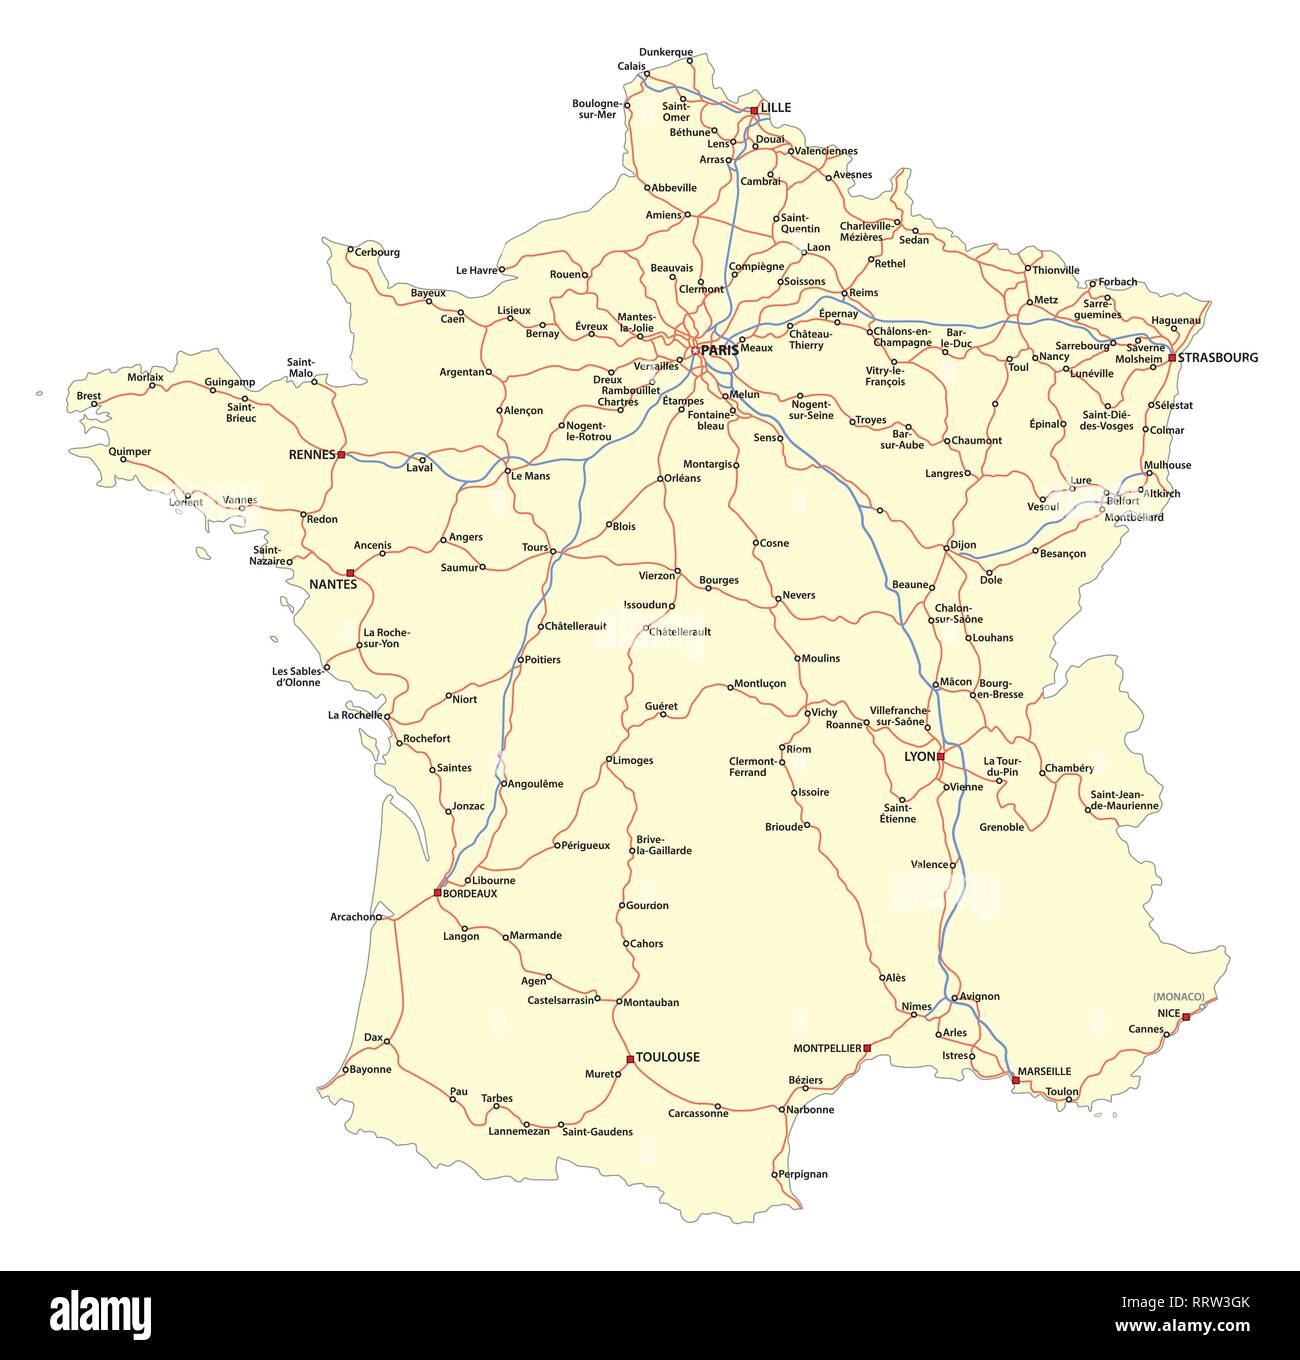 French railway map immagini e fotografie stock ad alta risoluzione - Alamy